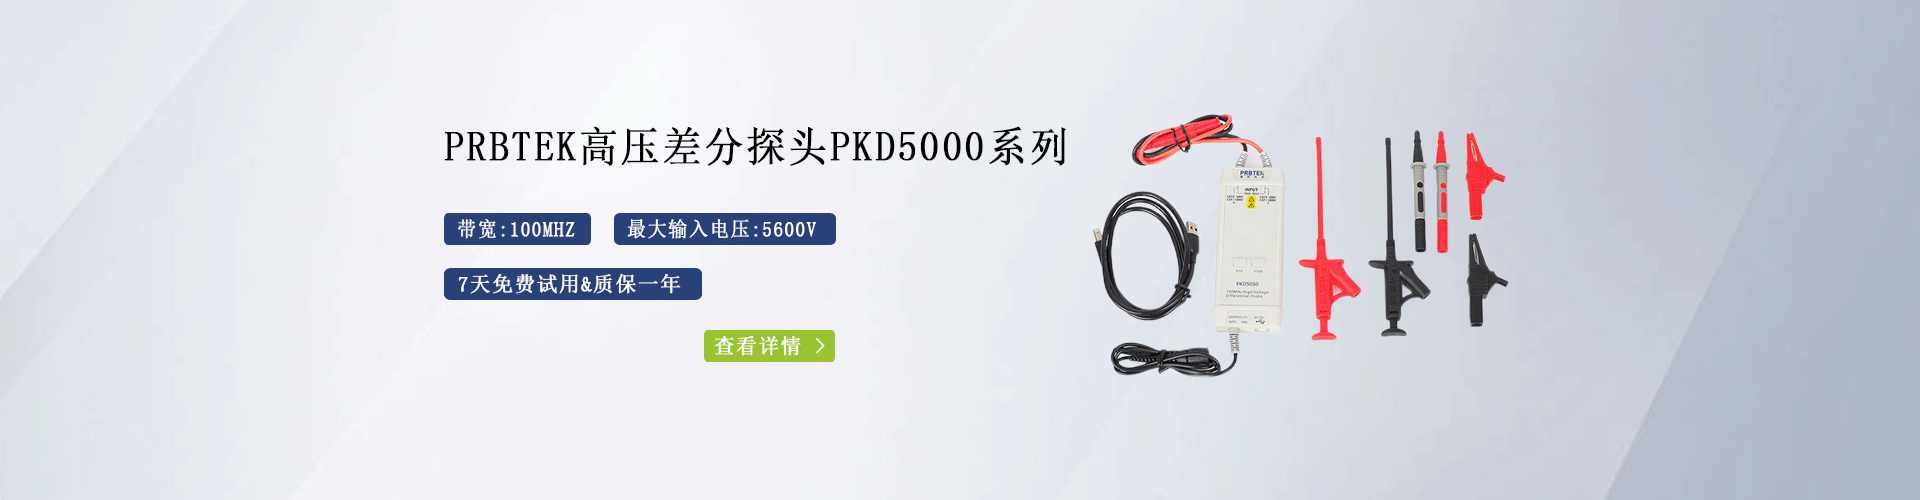 普科高压差分探头PKD5000系列